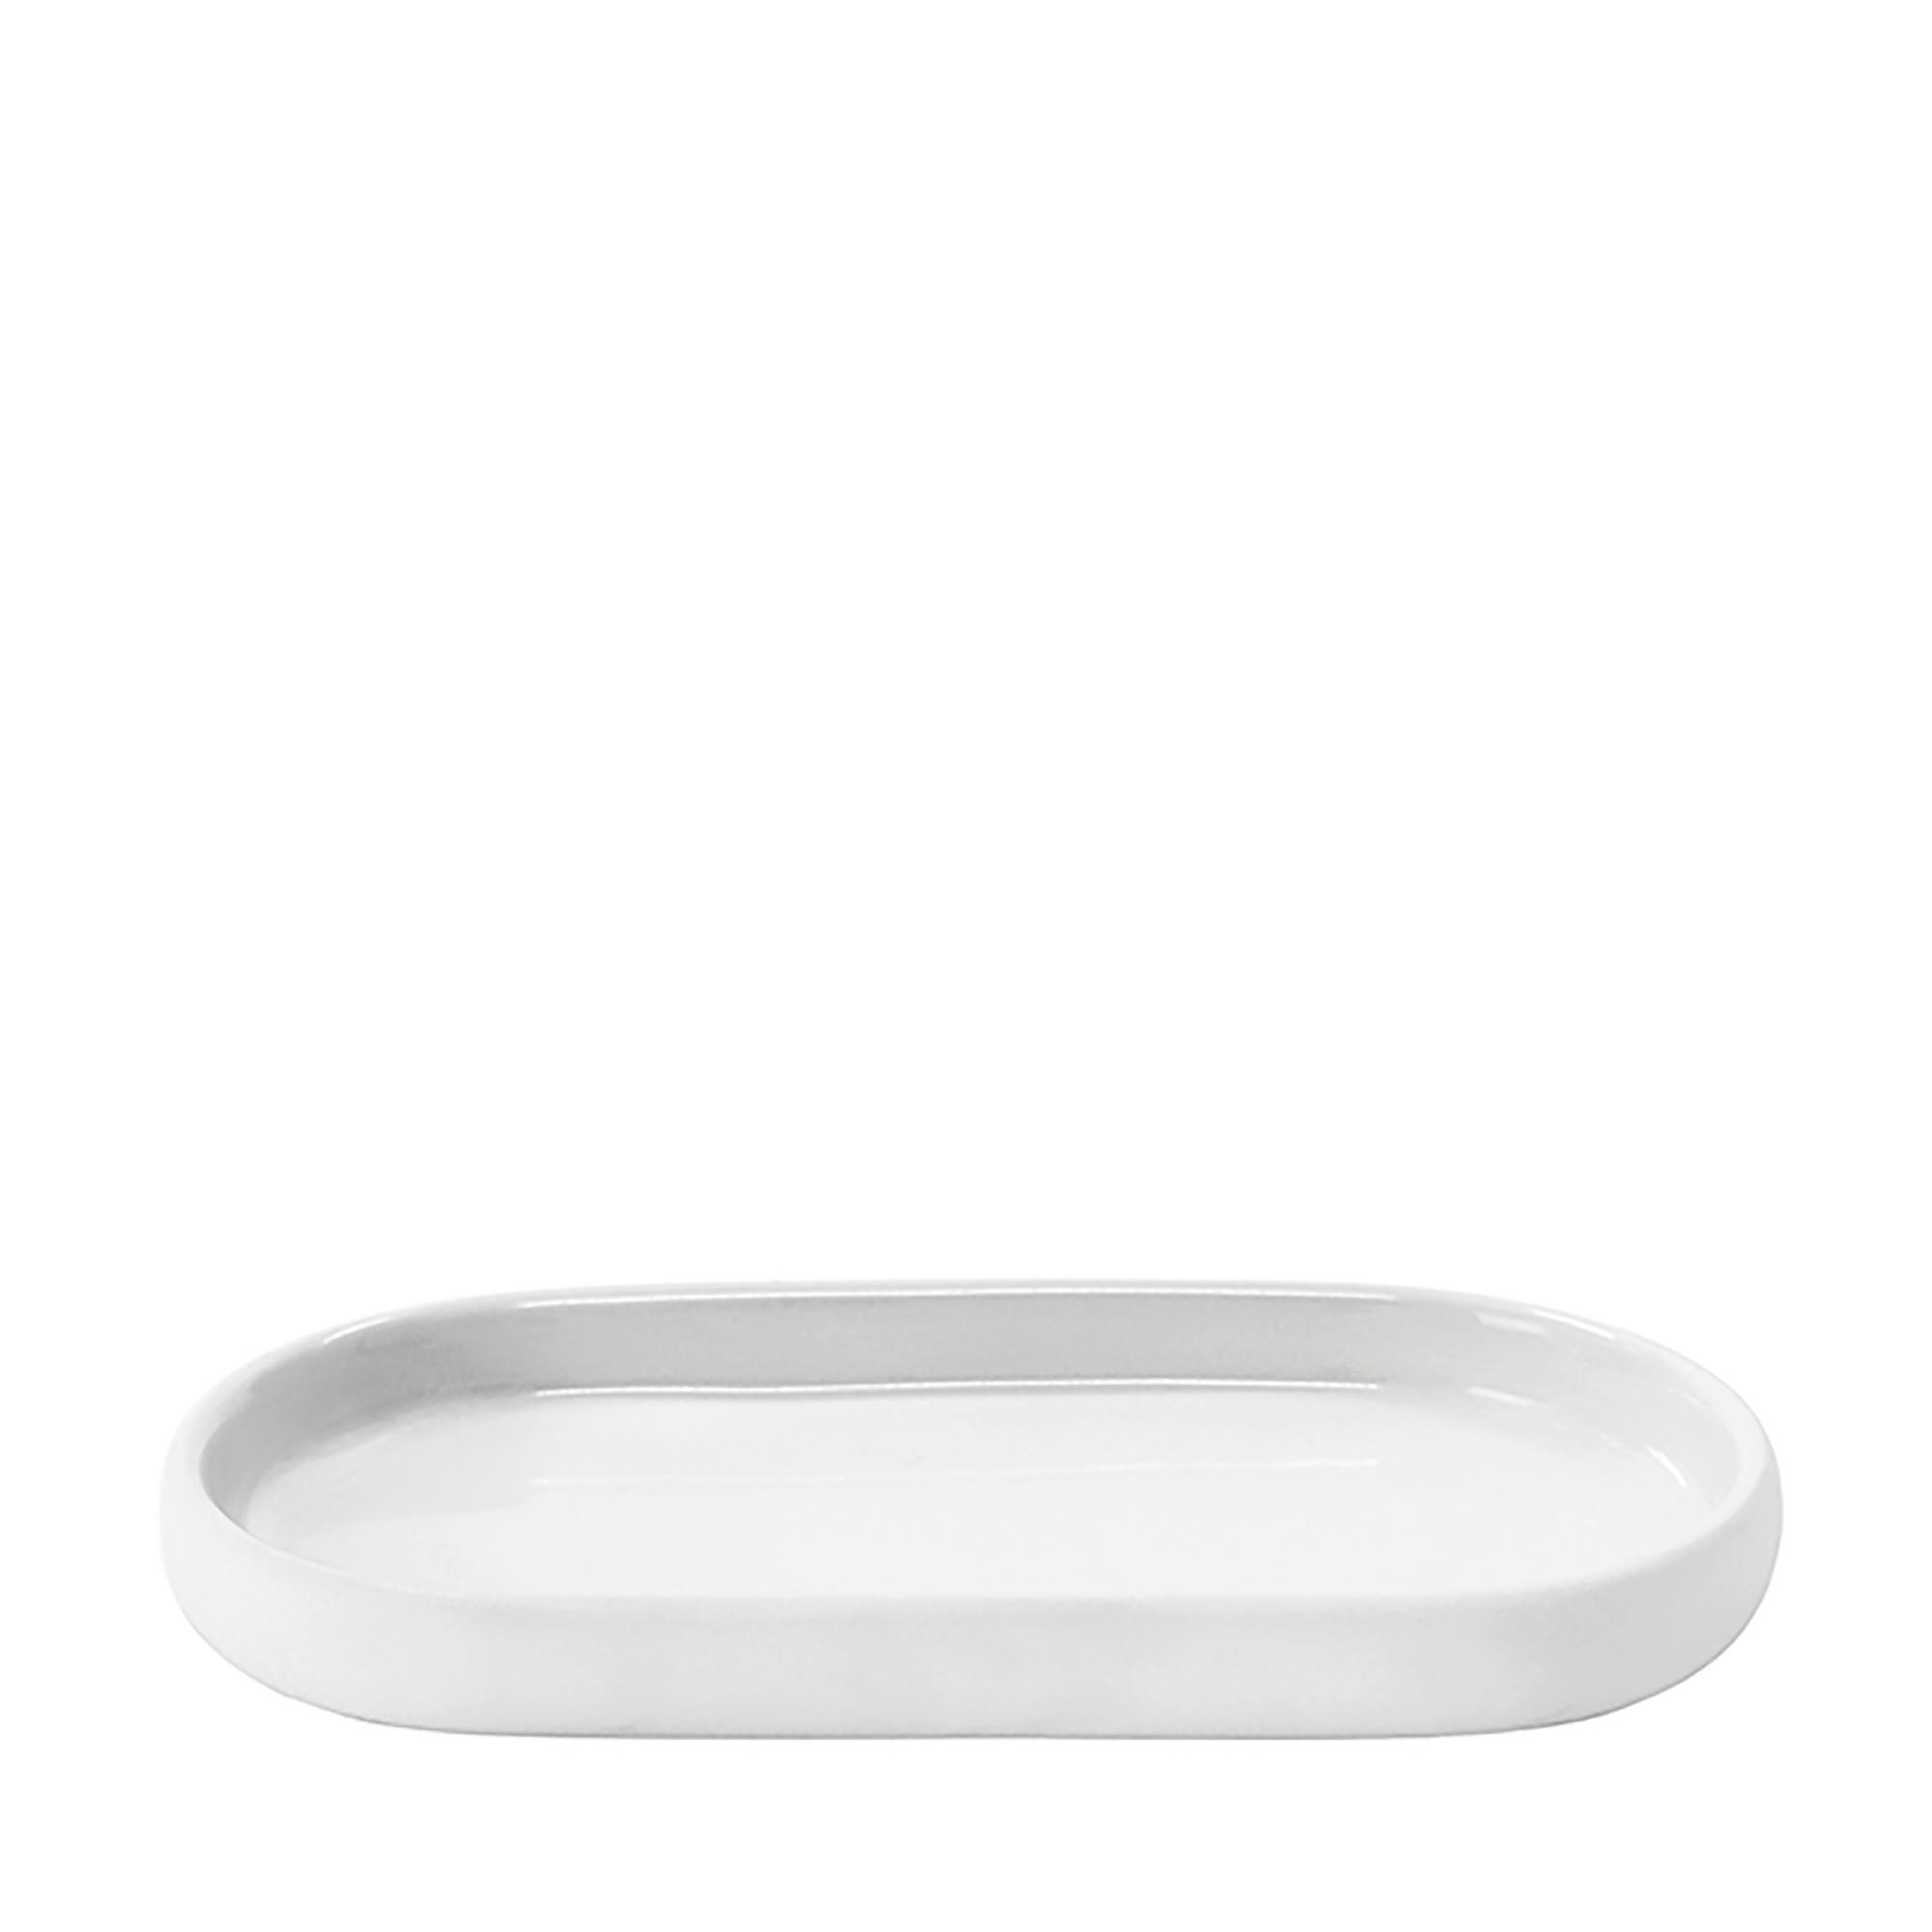 ABLAGE 10/2,5/19 cm  - Weiß, Design, Keramik (10/2,5/19cm) - Blomus